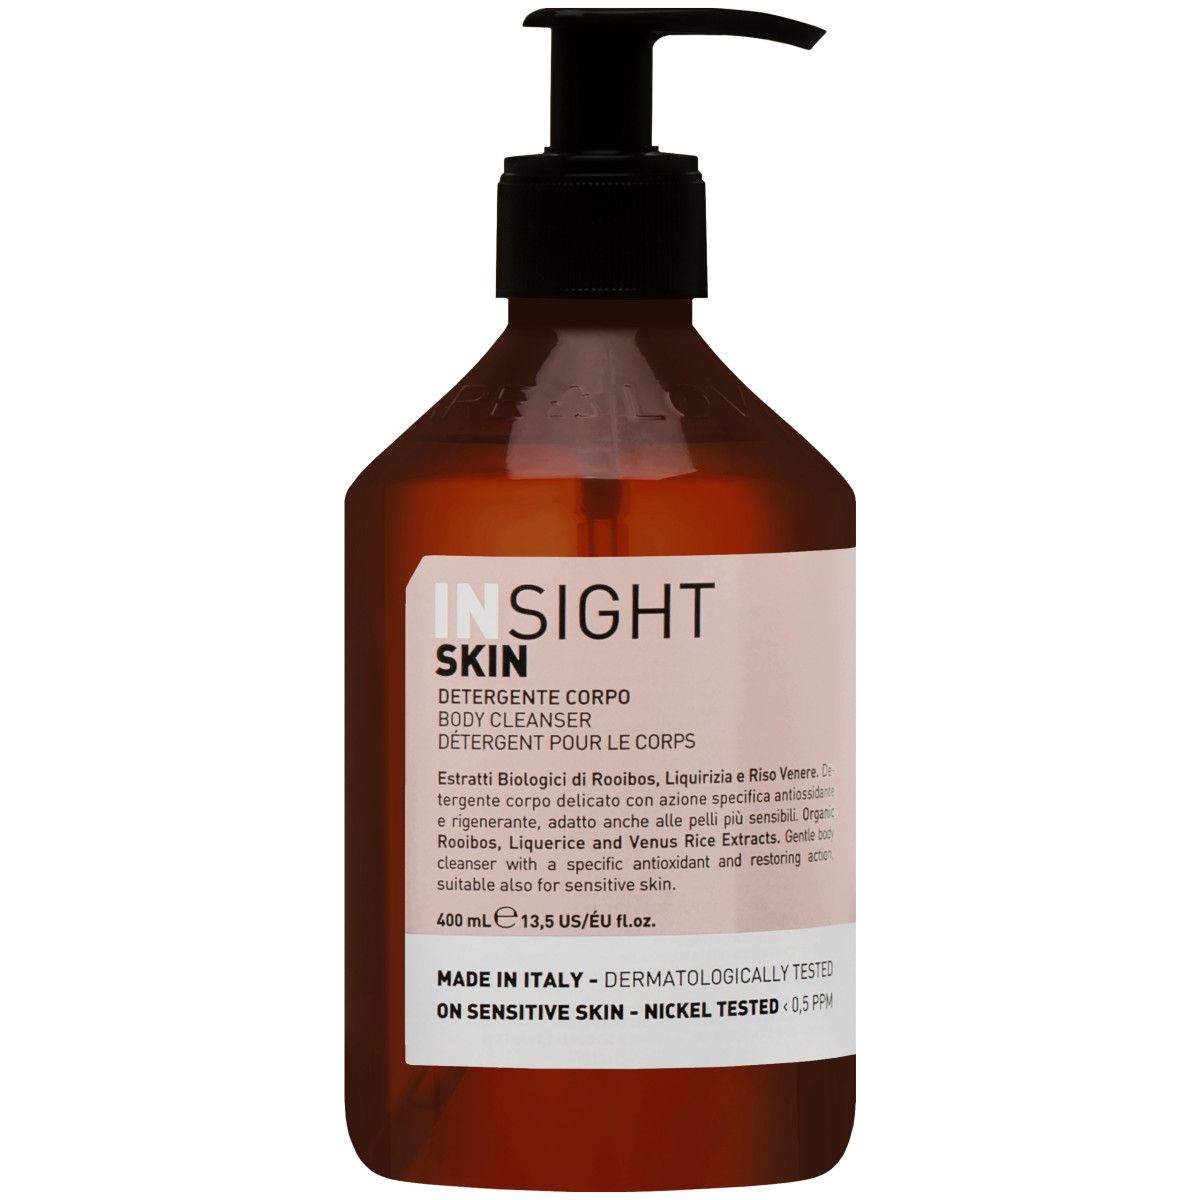 Insight Skin Body Cleanser - nawilżający żel do mycia ciała, 400ml